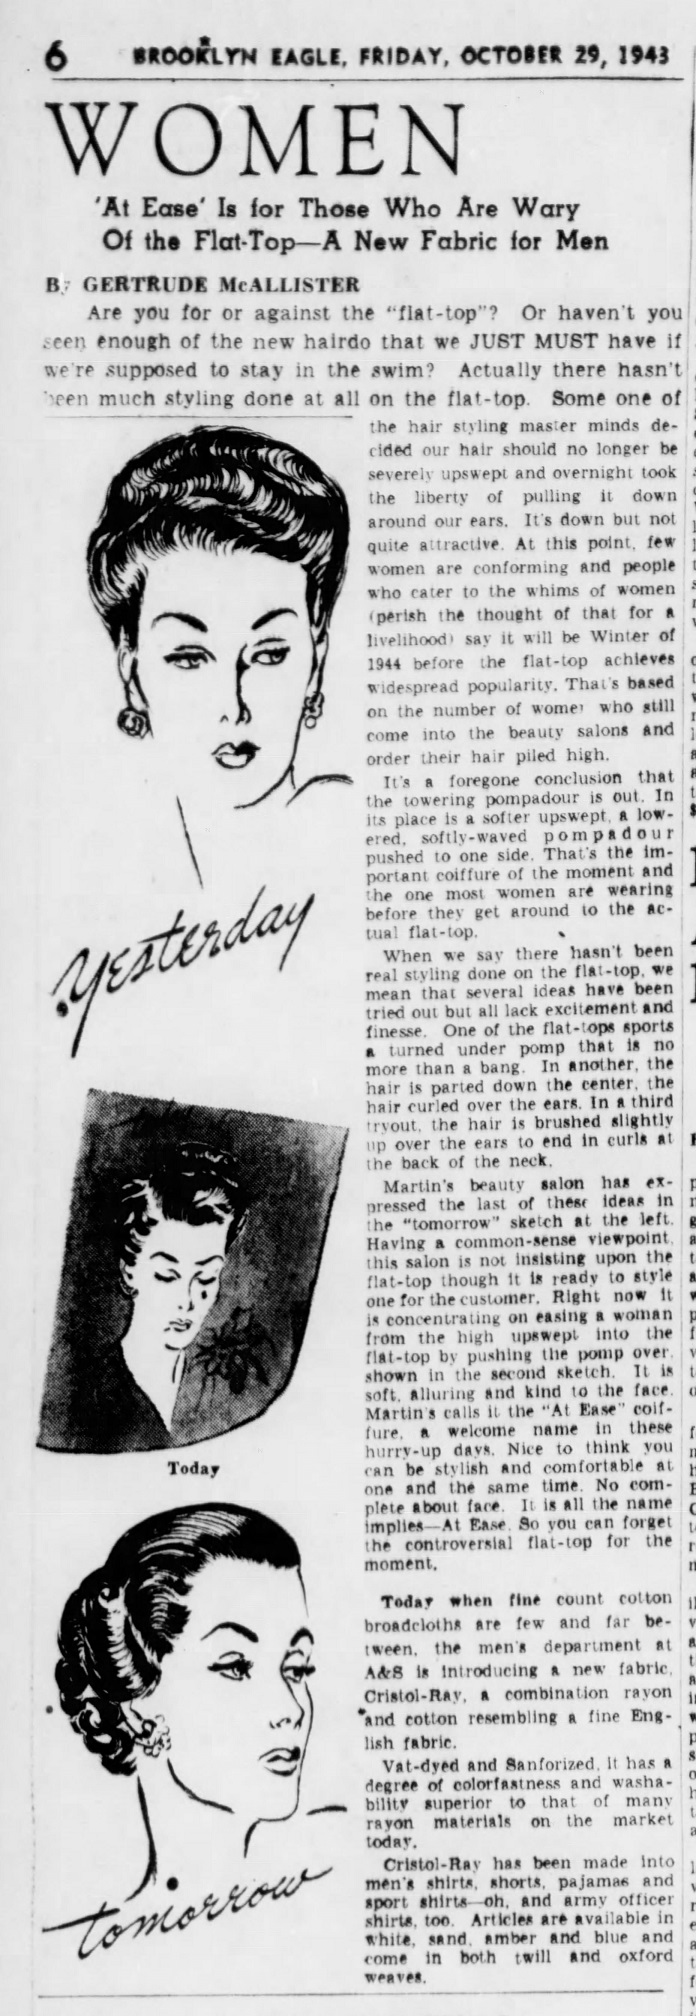 The_Brooklyn_Daily_Eagle_Fri__Oct_29__1943_(2).jpg